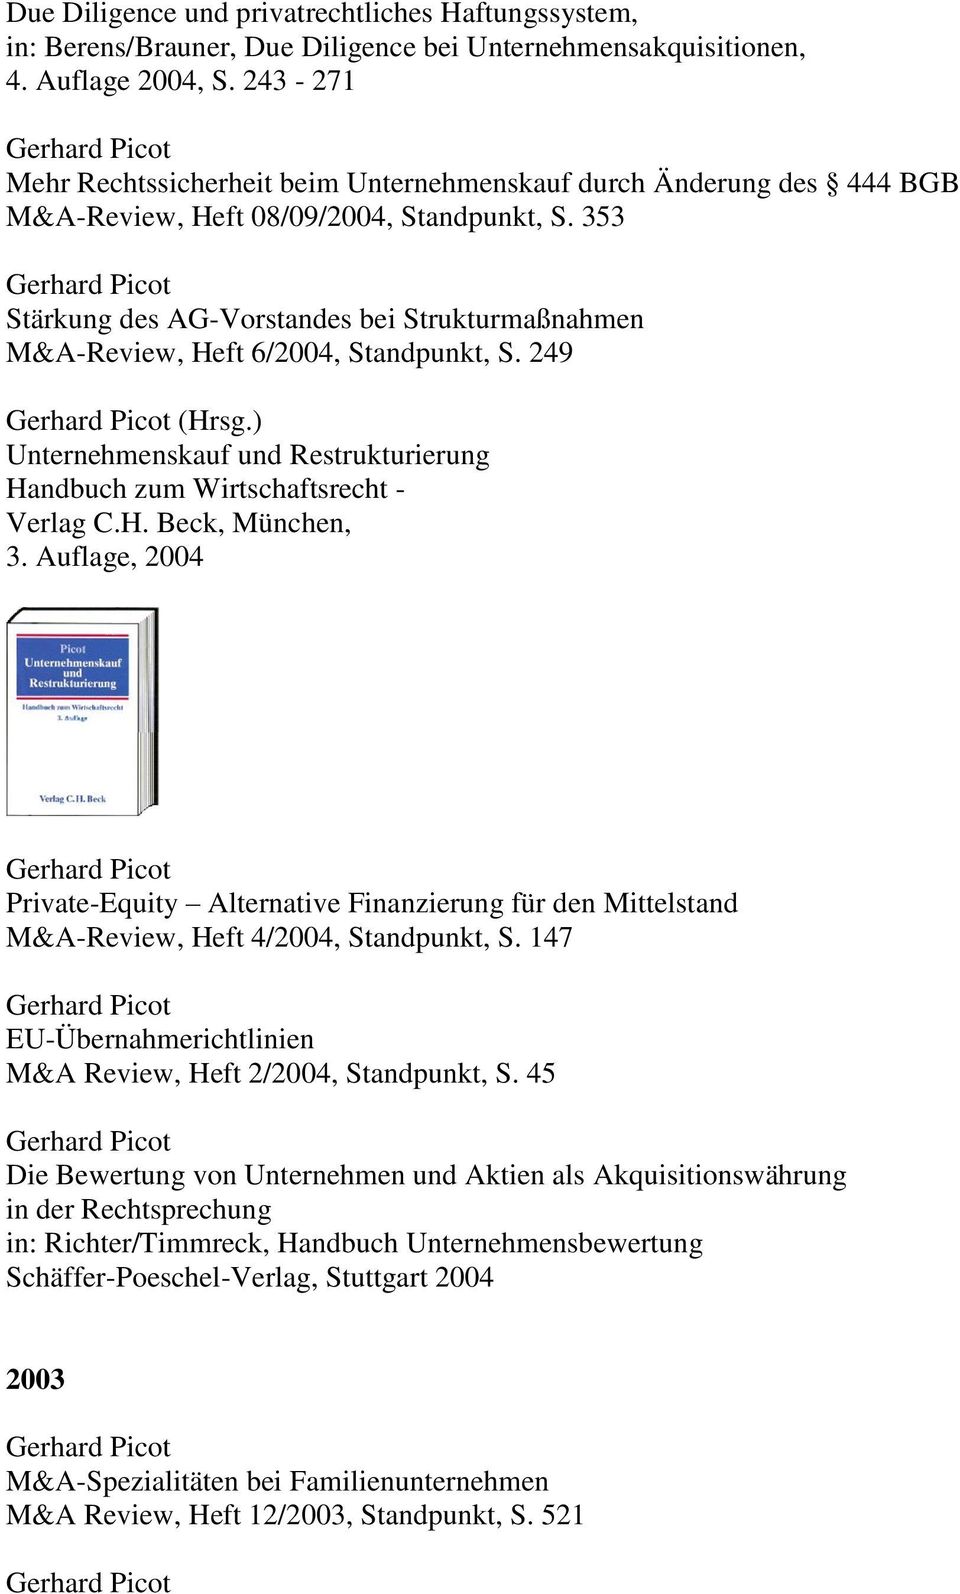 353 Stärkung des AG-Vorstandes bei Strukturmaßnahmen M&A-Review, Heft 6/2004, Standpunkt, S. 249 (Hrsg.) Unternehmenskauf und Restrukturierung Handbuch zum Wirtschaftsrecht - Verlag C.H. Beck, München, 3.